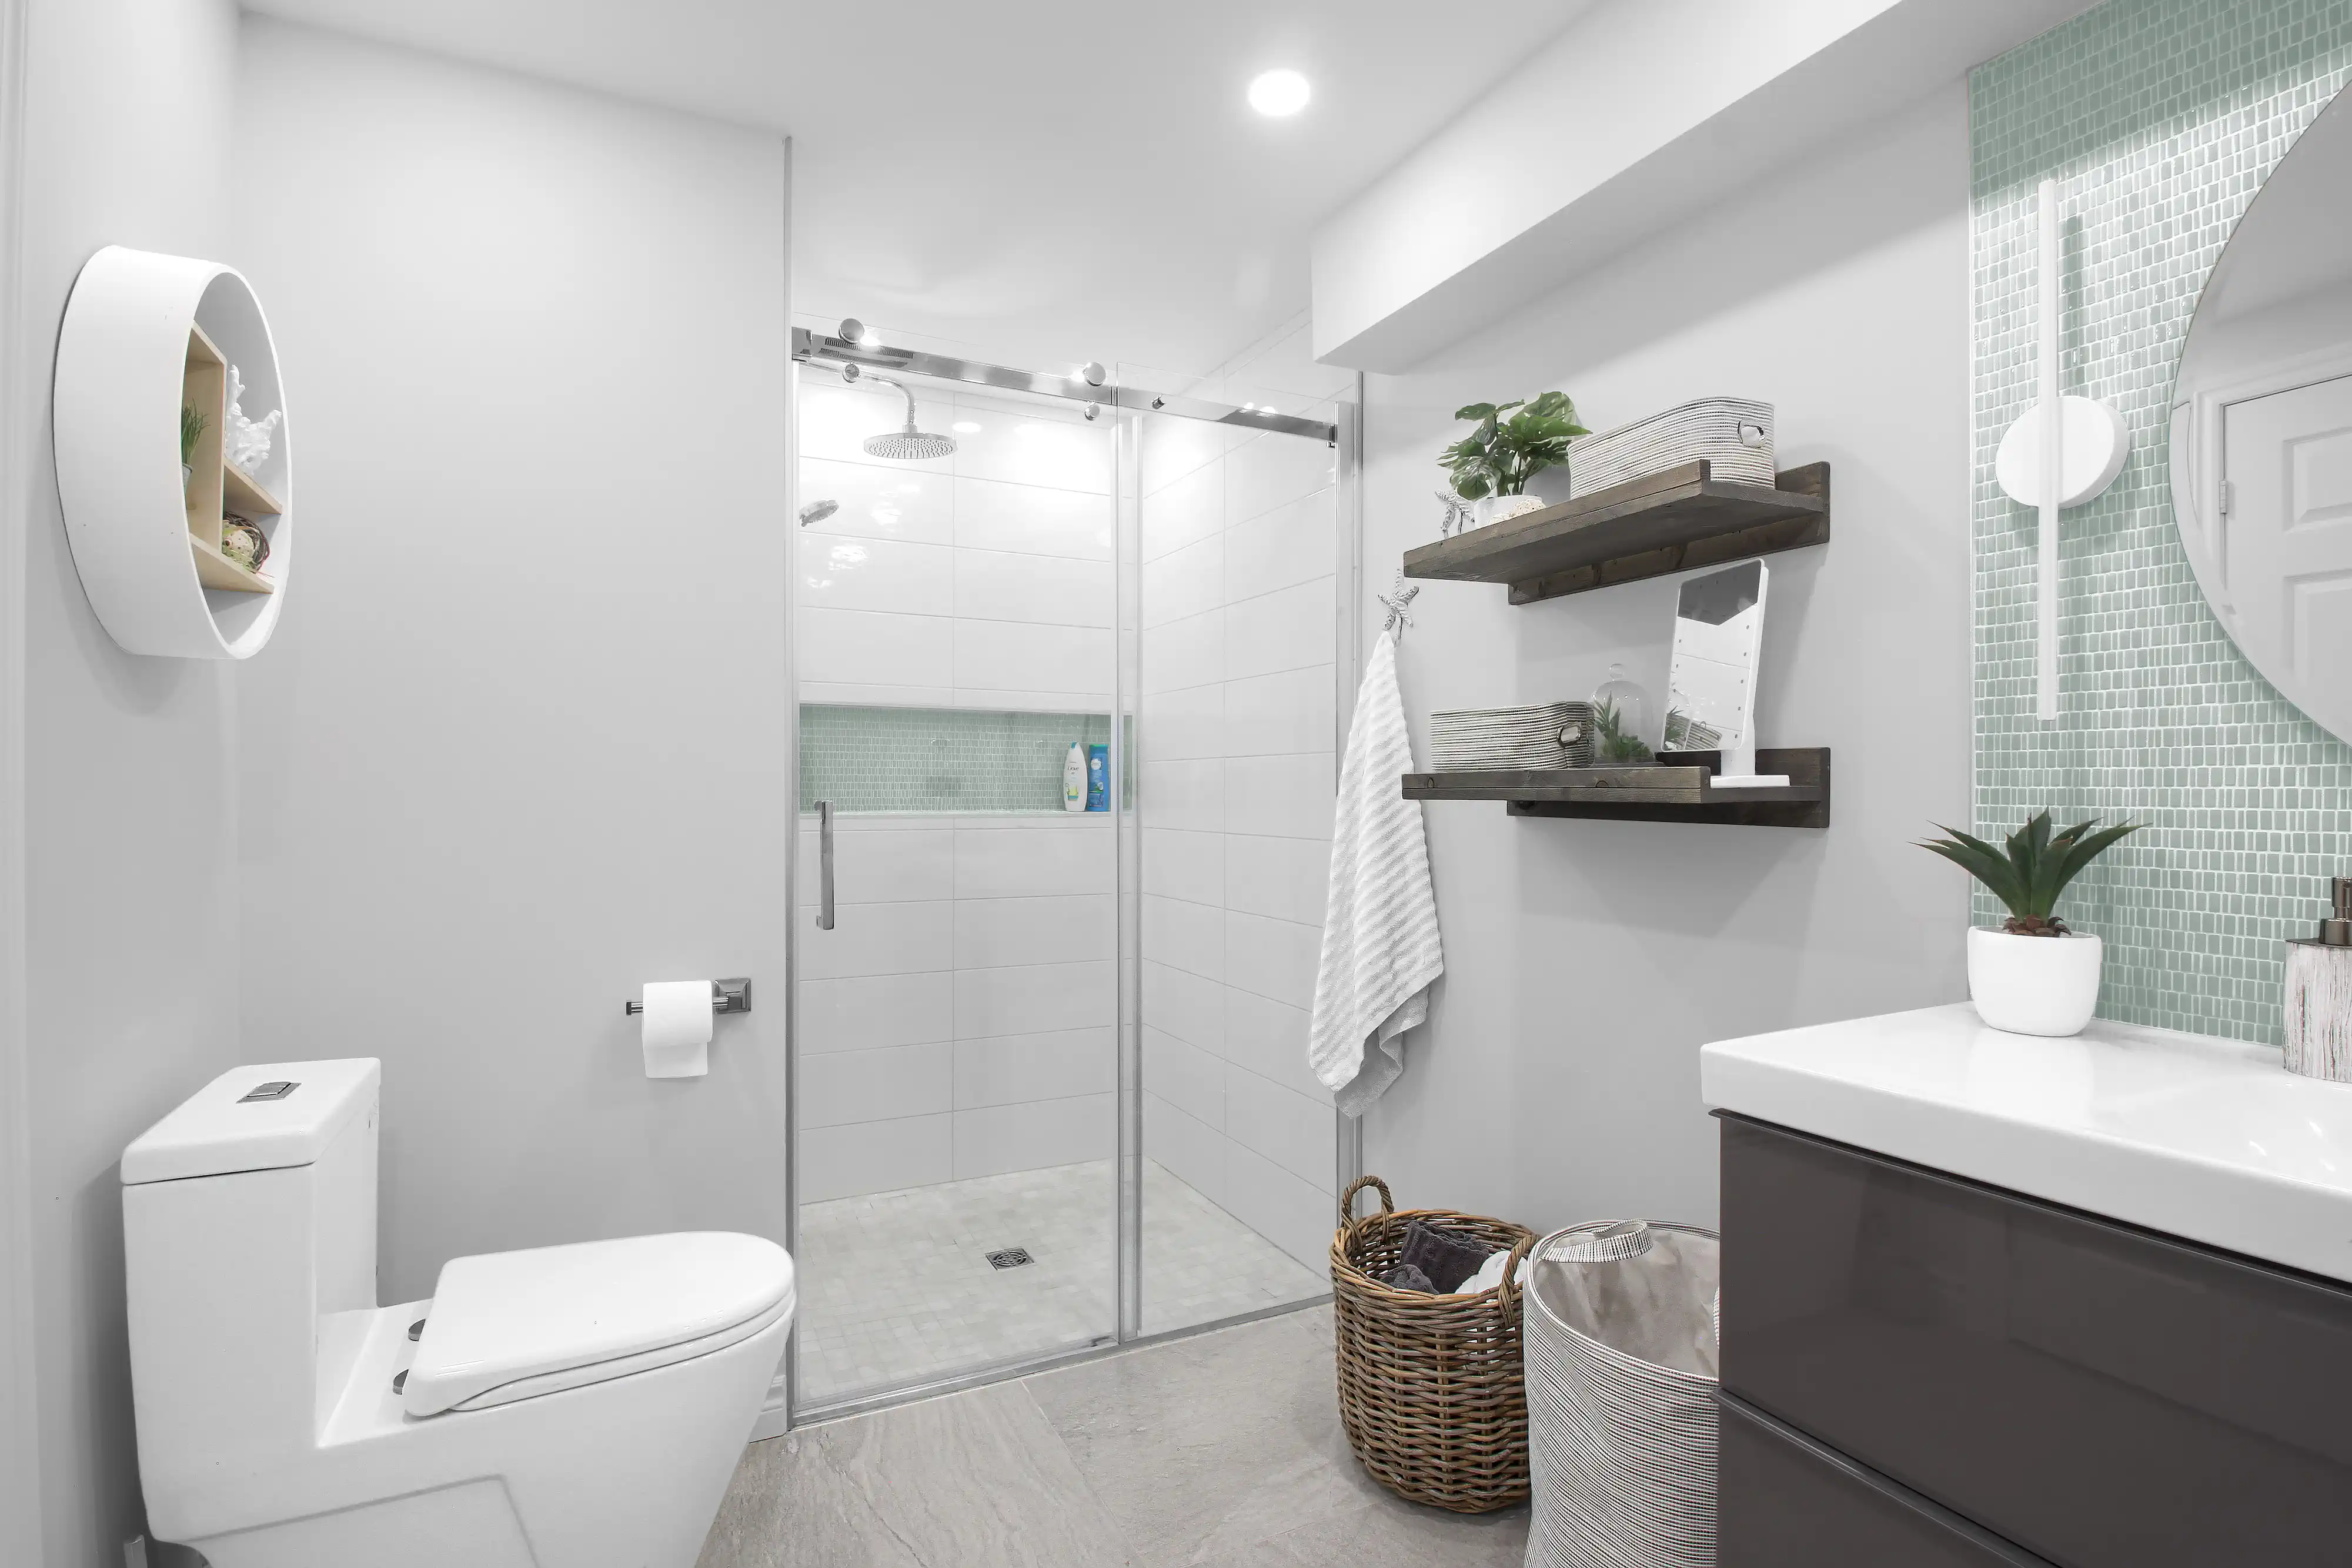 Une salle de bain moderne avec une douche, une toilette, un lavabo et des étagères en bois, intérieur signé Sarah Brown Design